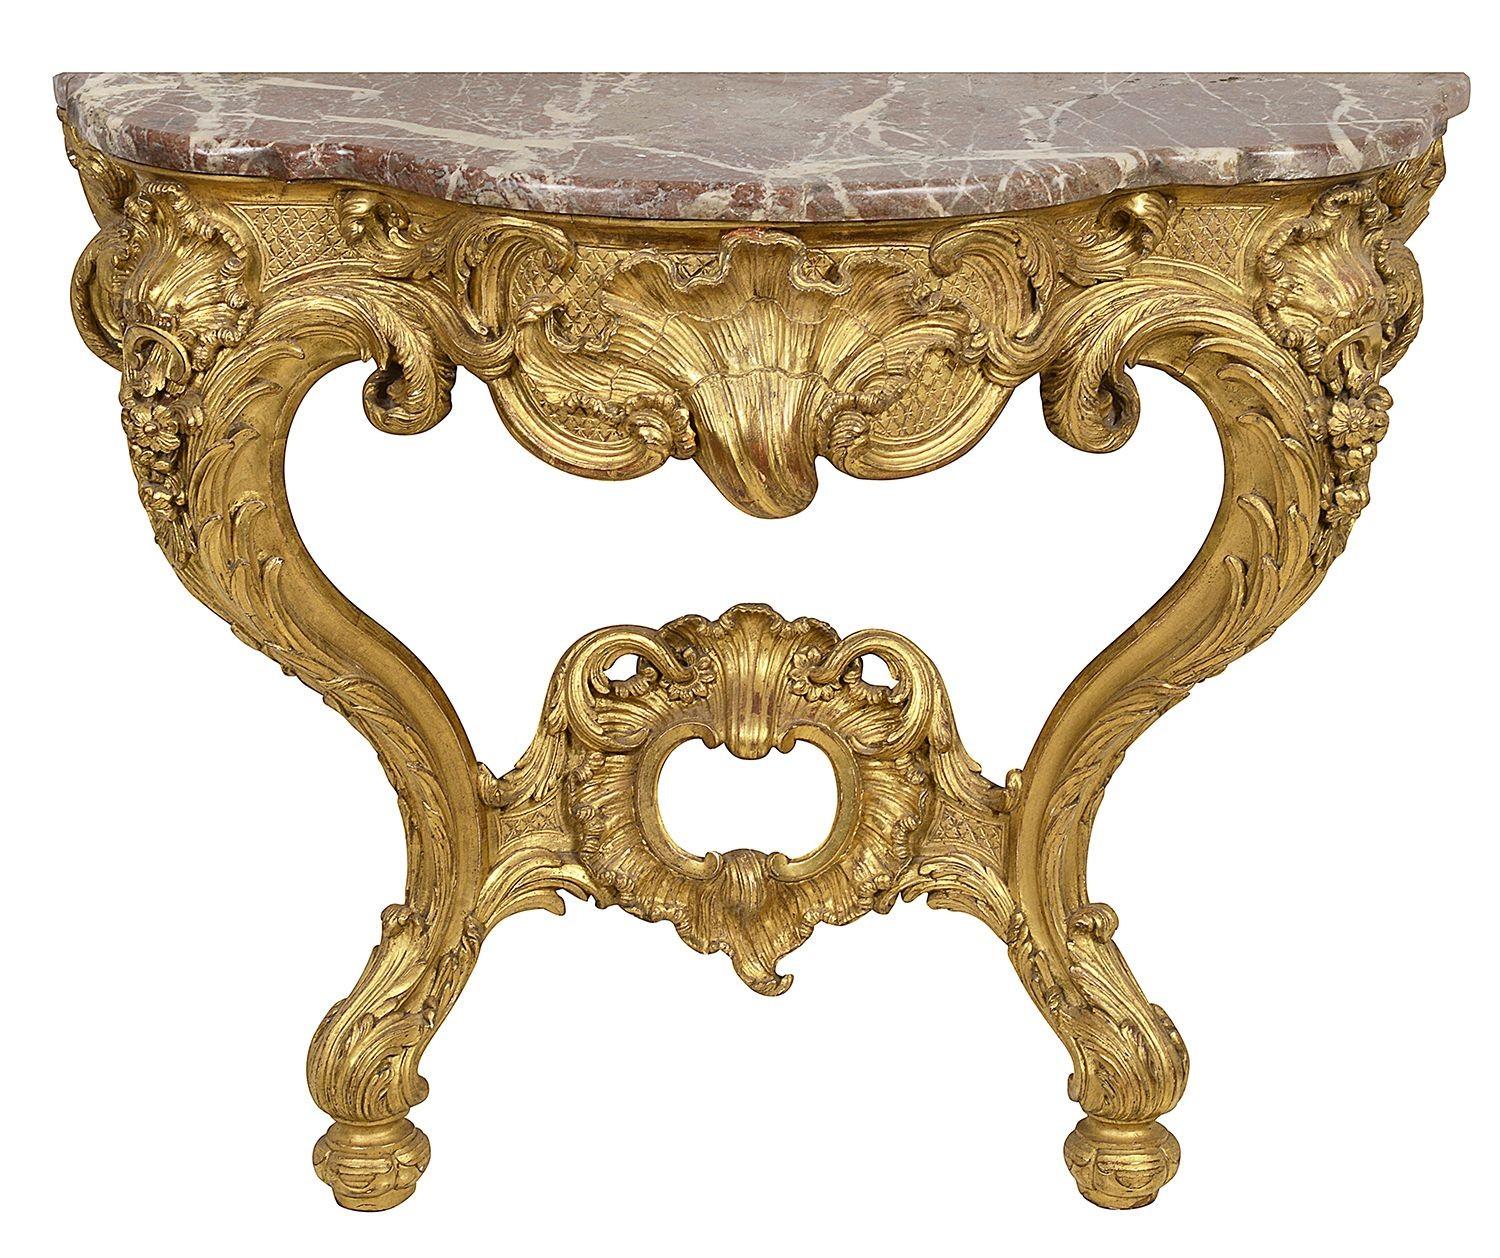 Une paire de consoles en bois doré sculpté de très bonne qualité, datant du XIXe siècle. Chacune d'entre elles possède son plateau d'origine en marbre rouge Levanto, avec une magnifique décoration classique de feuillages et de coquillages, et repose